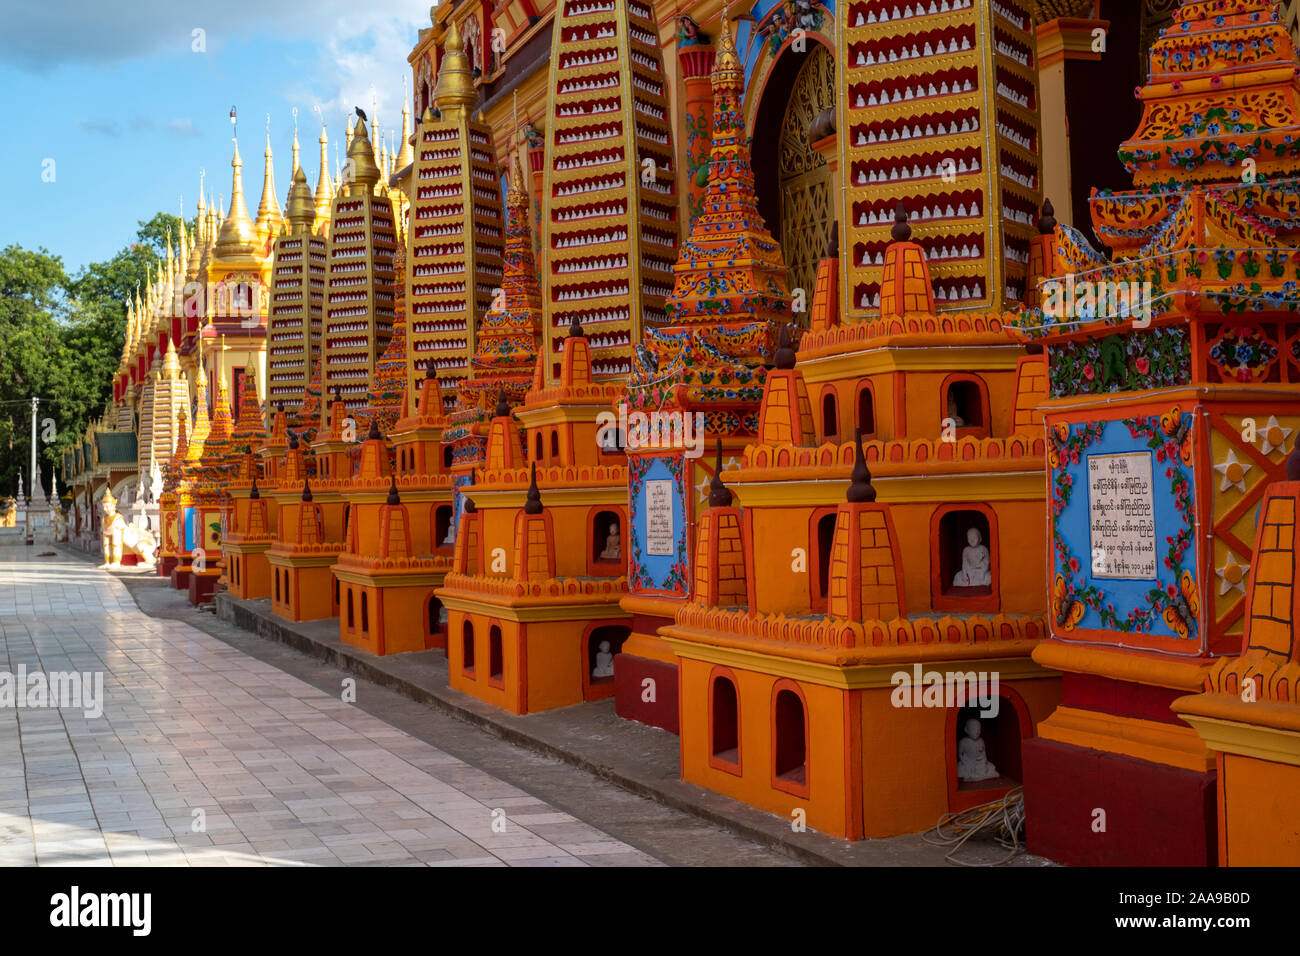 Vista exterior de la adornada de Boaddai templo que alberga quinientos mil imágenes de Buda en Monywa, Myanmar (Birmania) Foto de stock